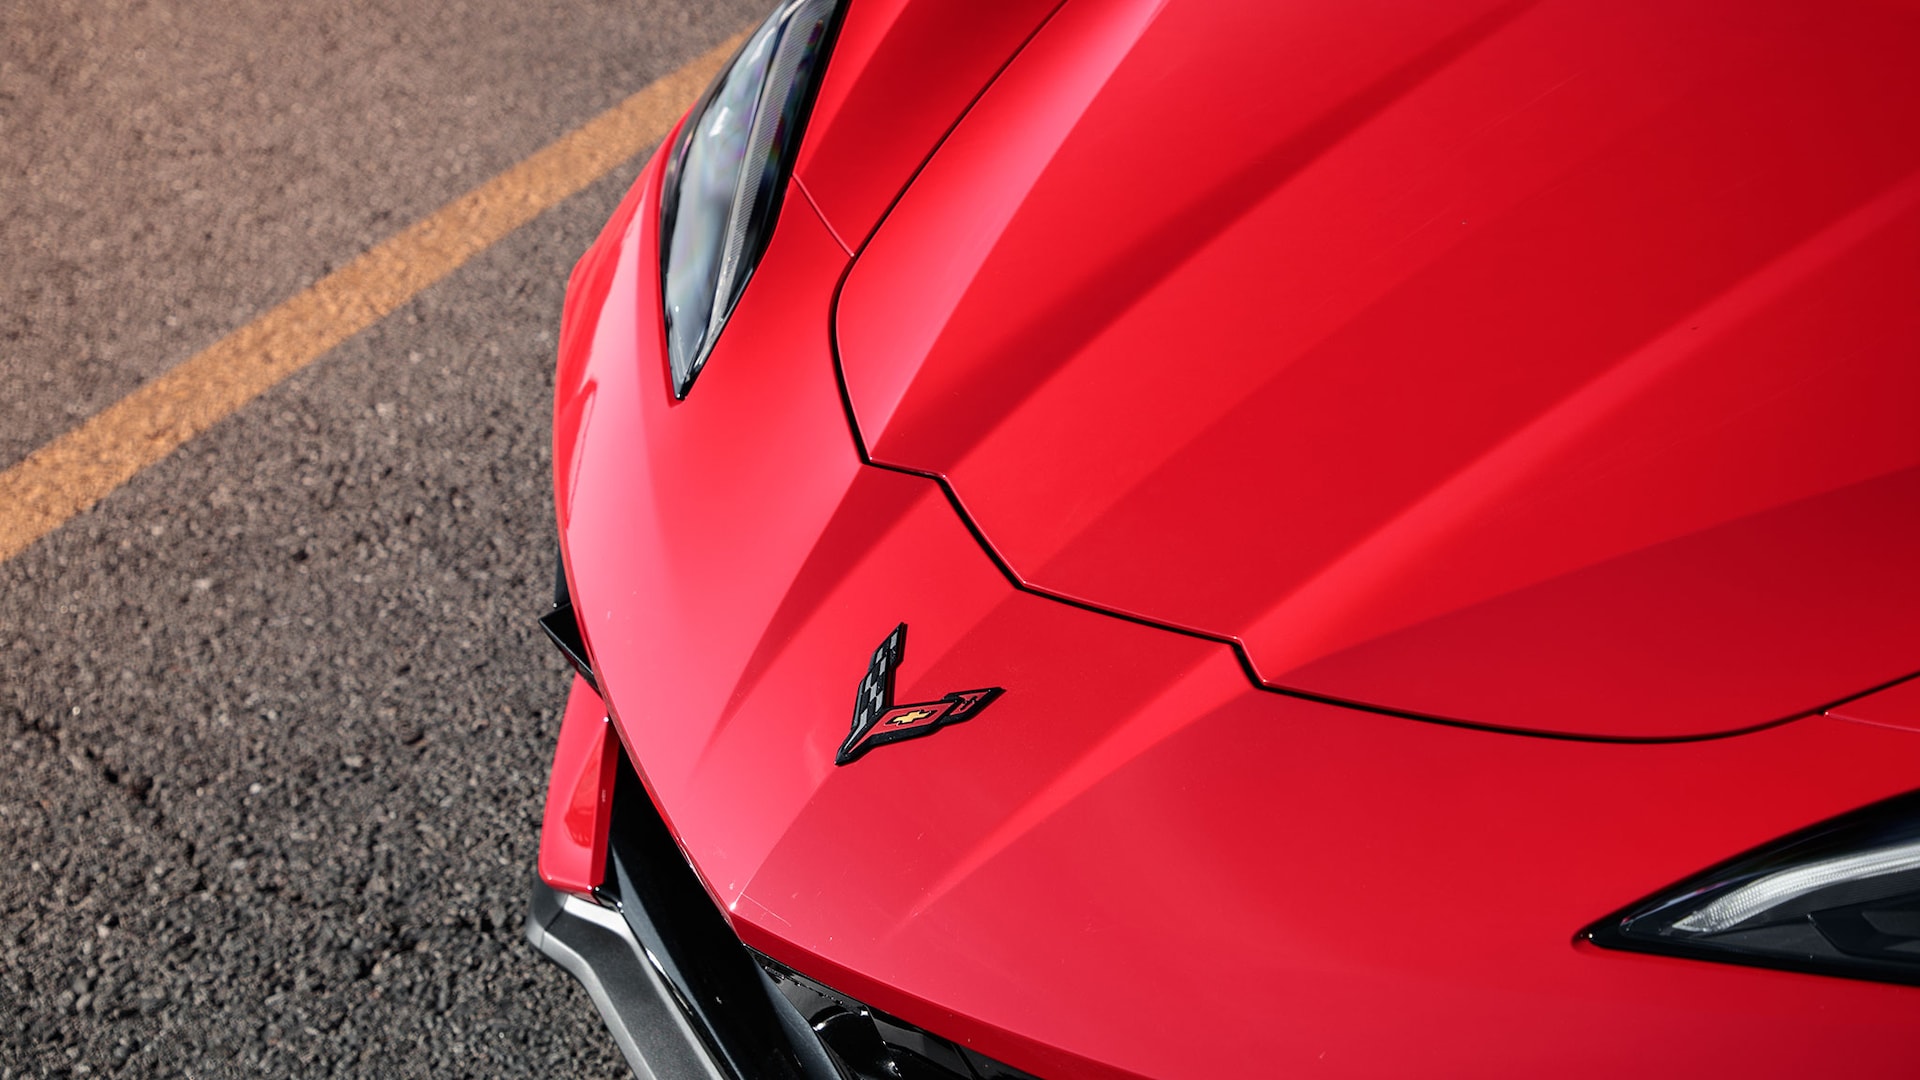 Corvette deviendra une marque de berlines et SUV électriques